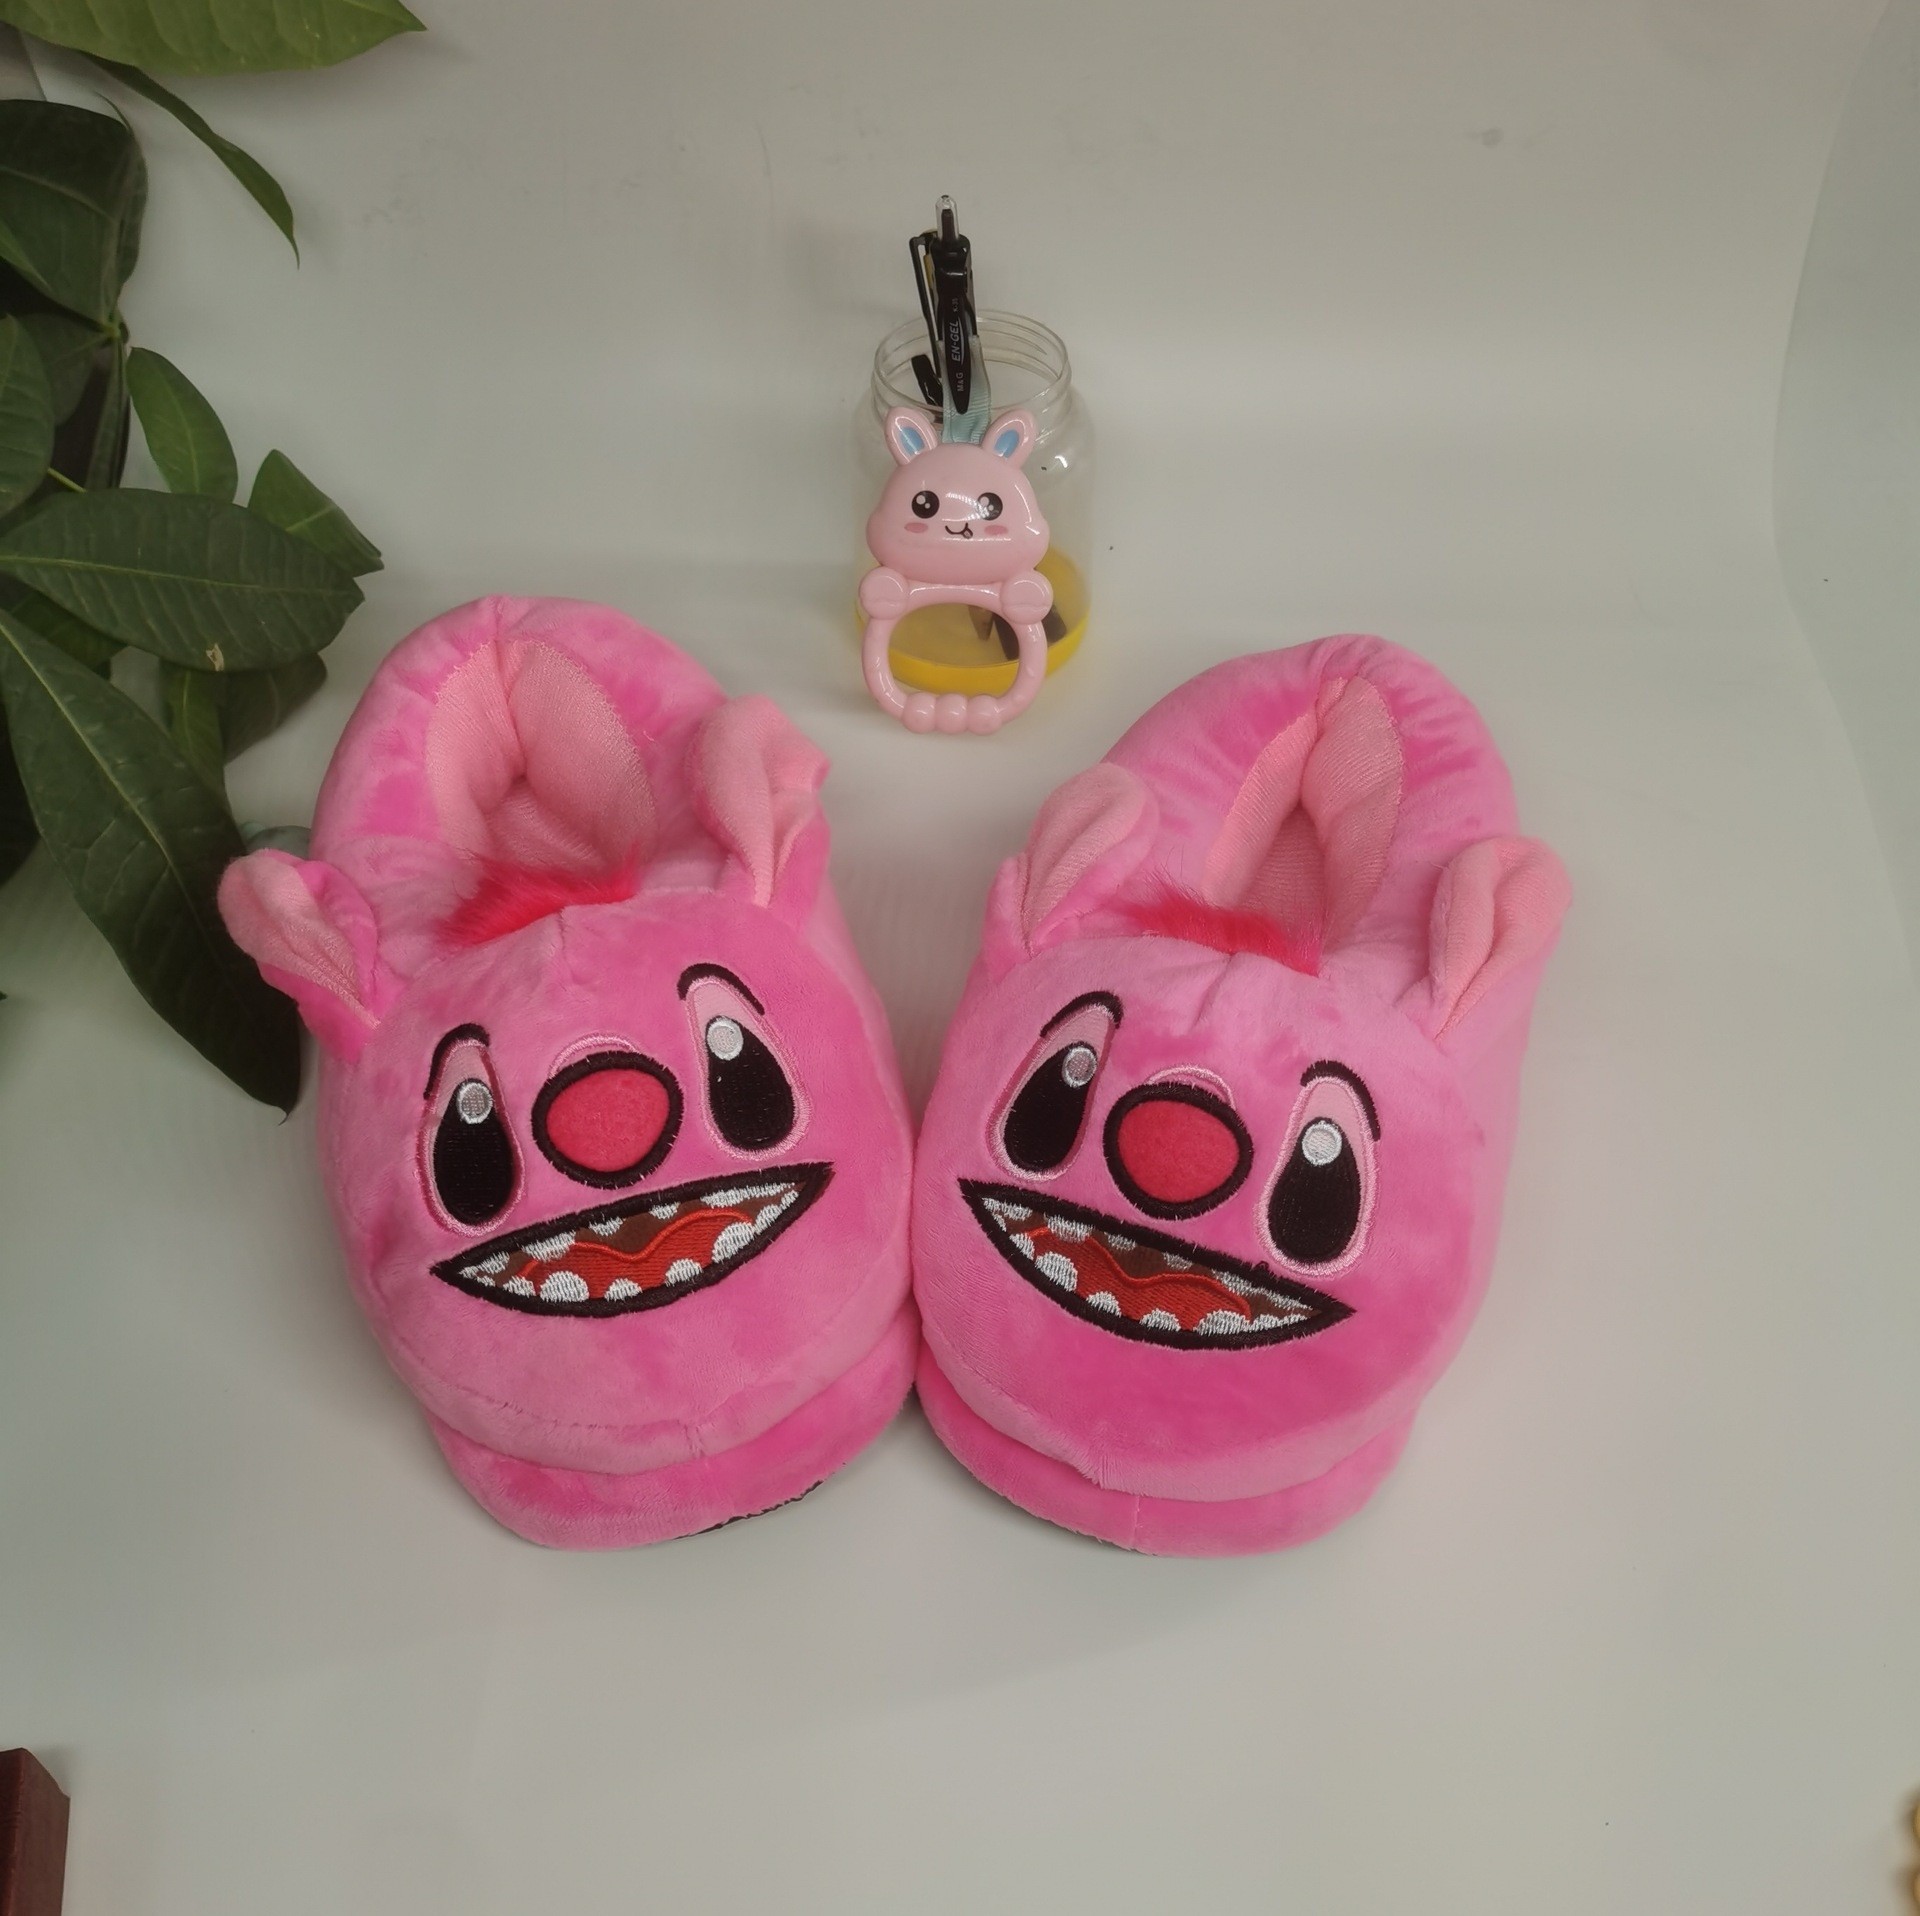 Pink Stitch Plush Stuffed Winter Slippers Shoes